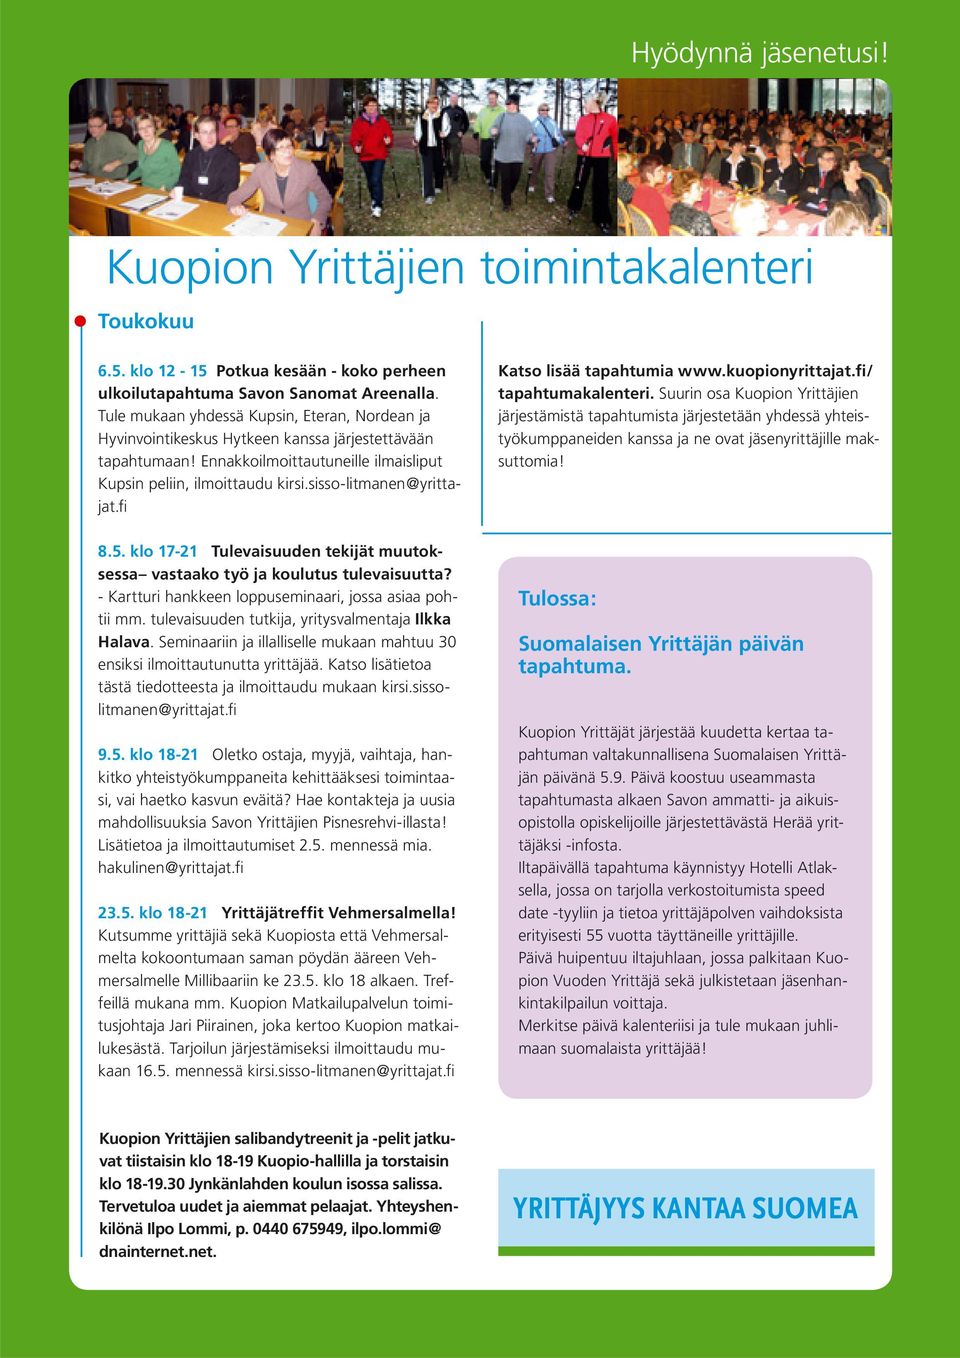 sisso-litmanen@yrittajat.fi Katso lisää tapahtumia www.kuopionyrittajat.fi/ tapahtumakalenteri.